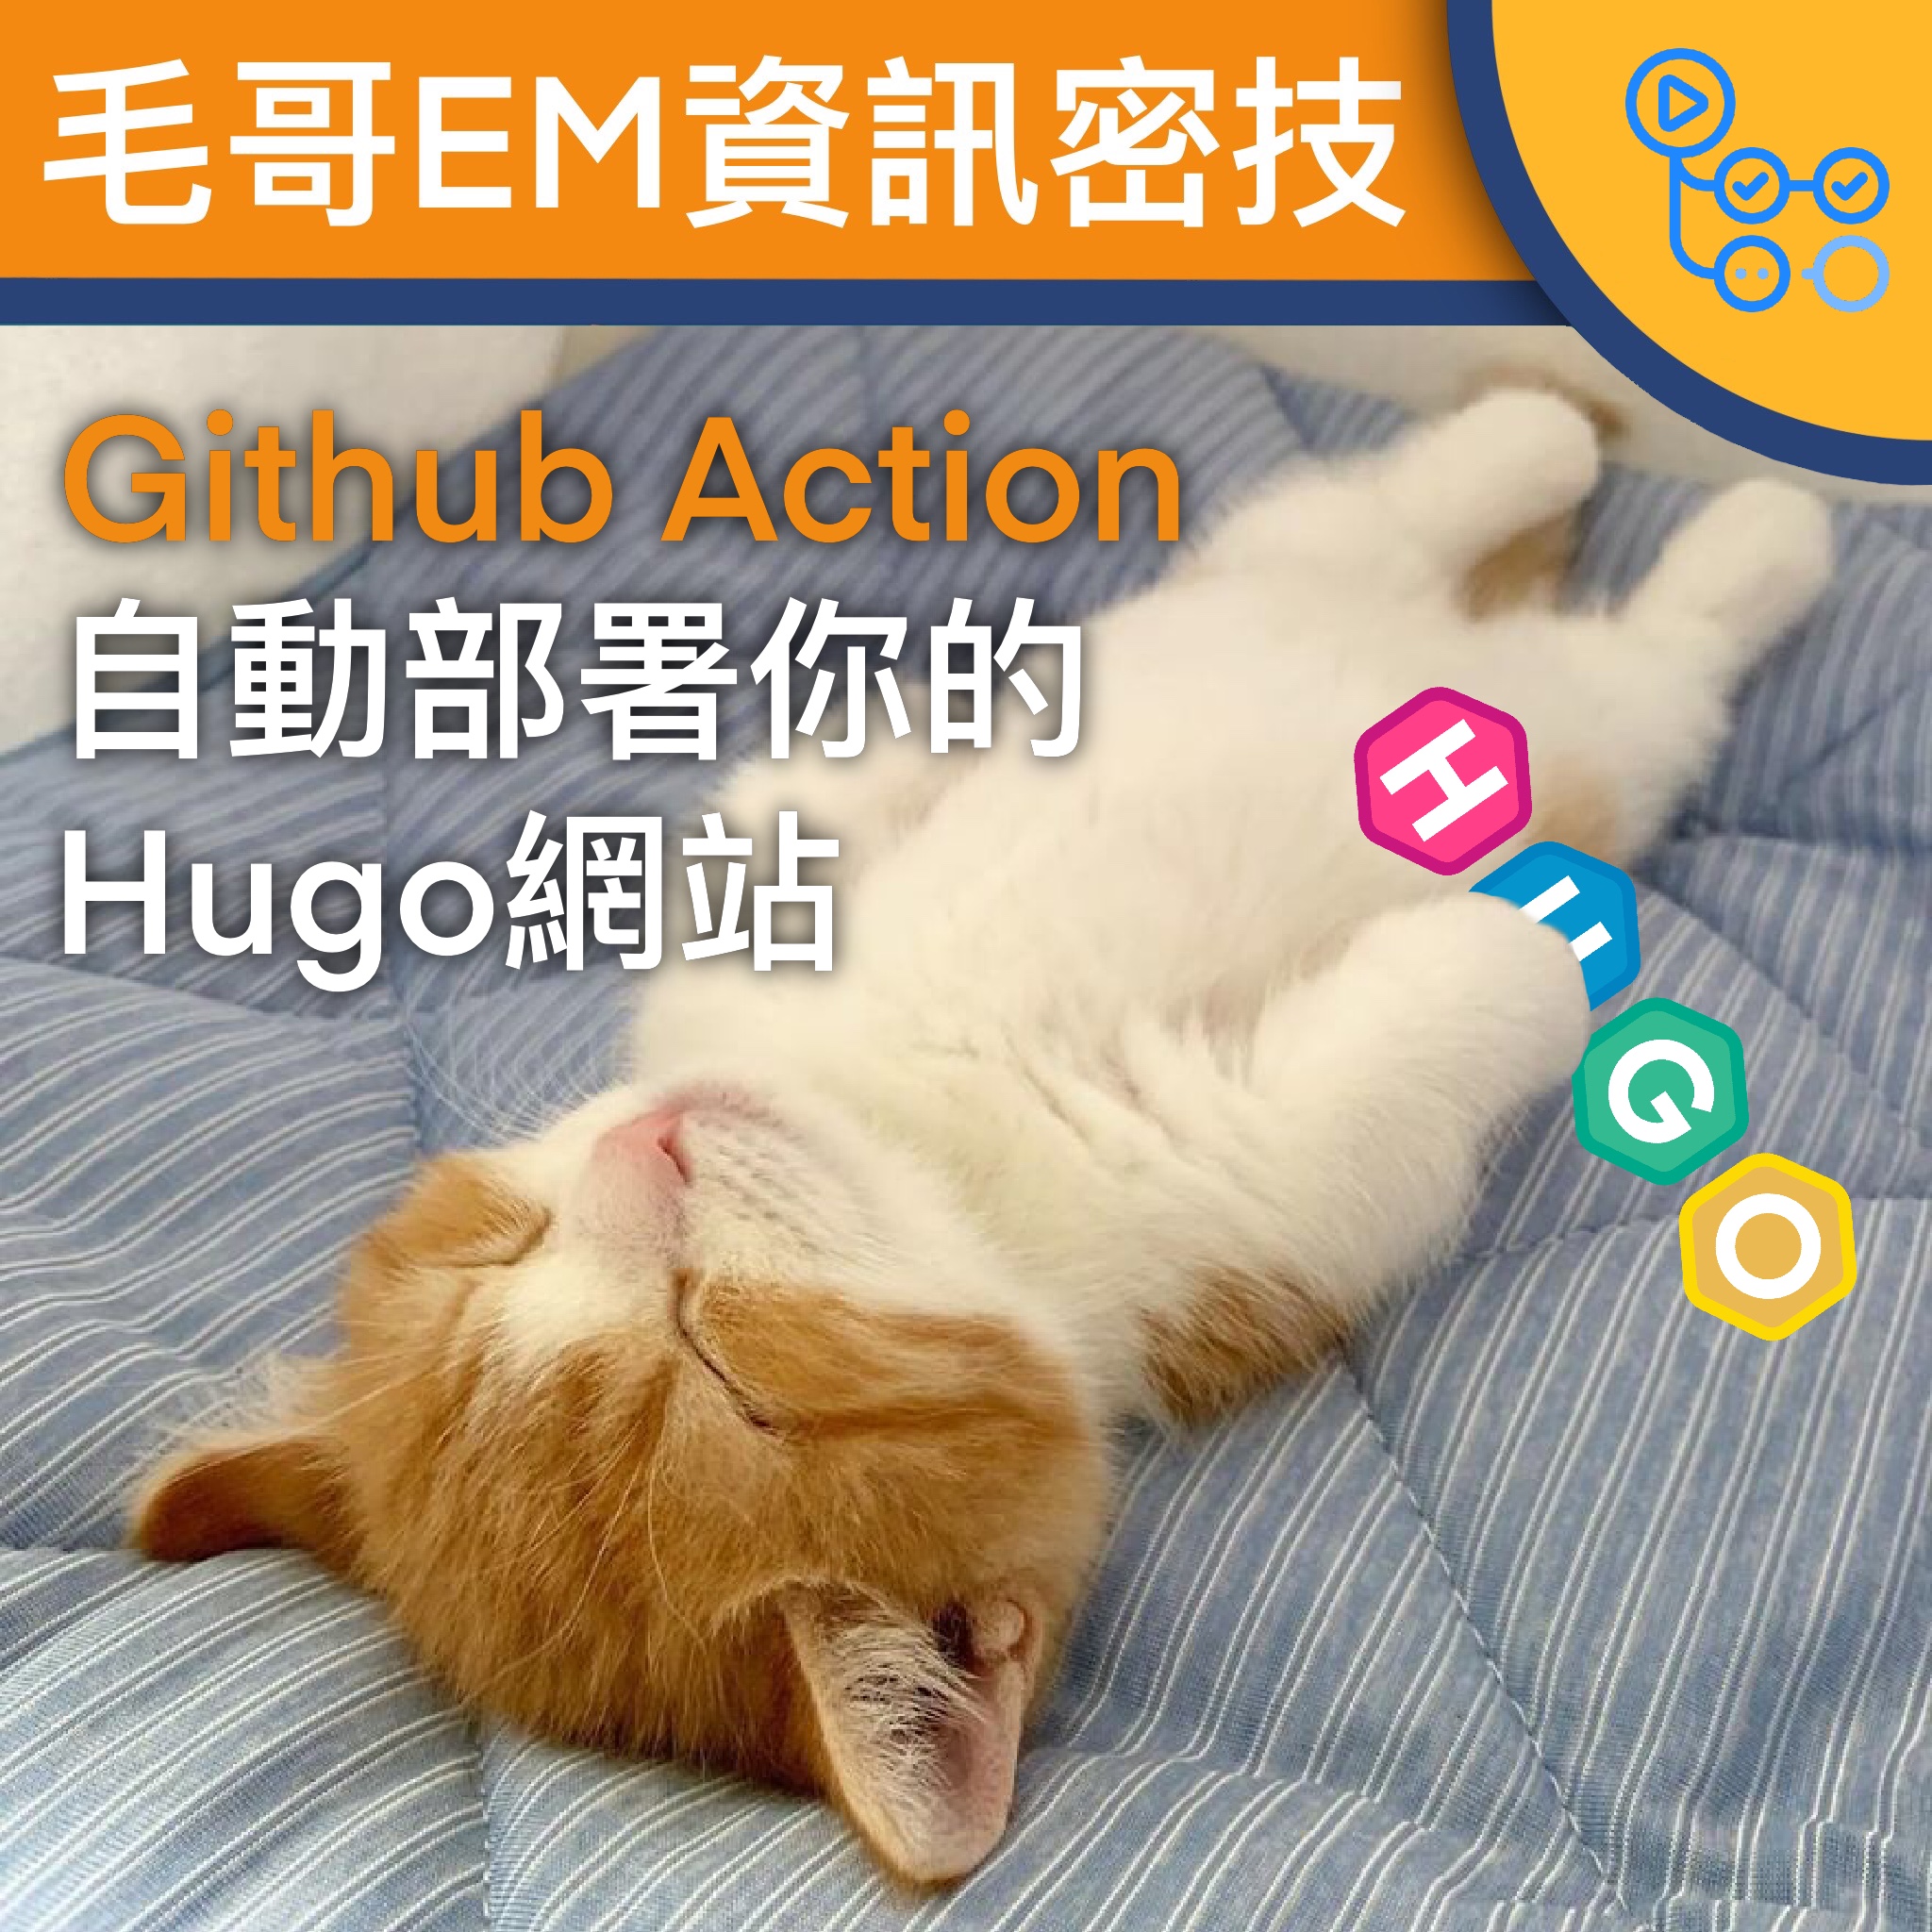 【Github Action】自動部署你的Hugo網站